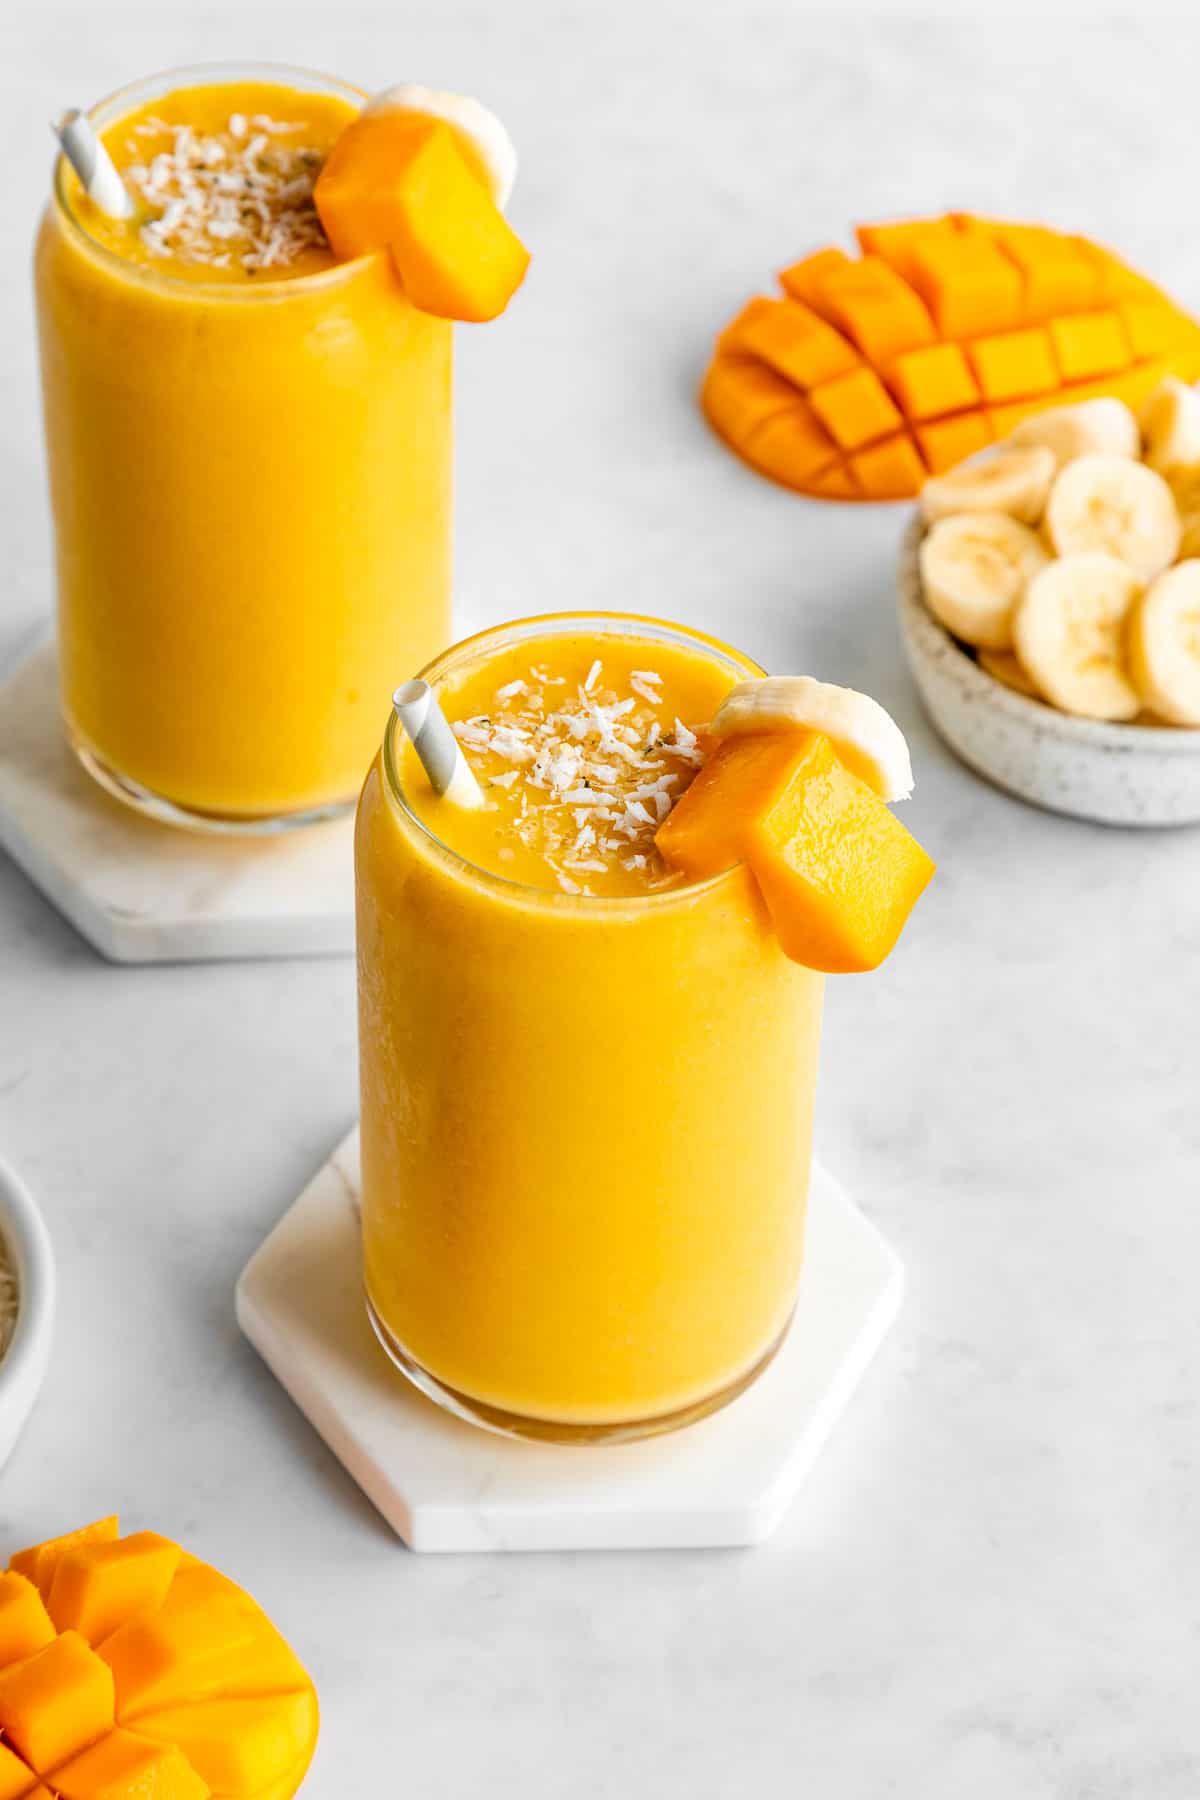 mango-banana-smoothie-2